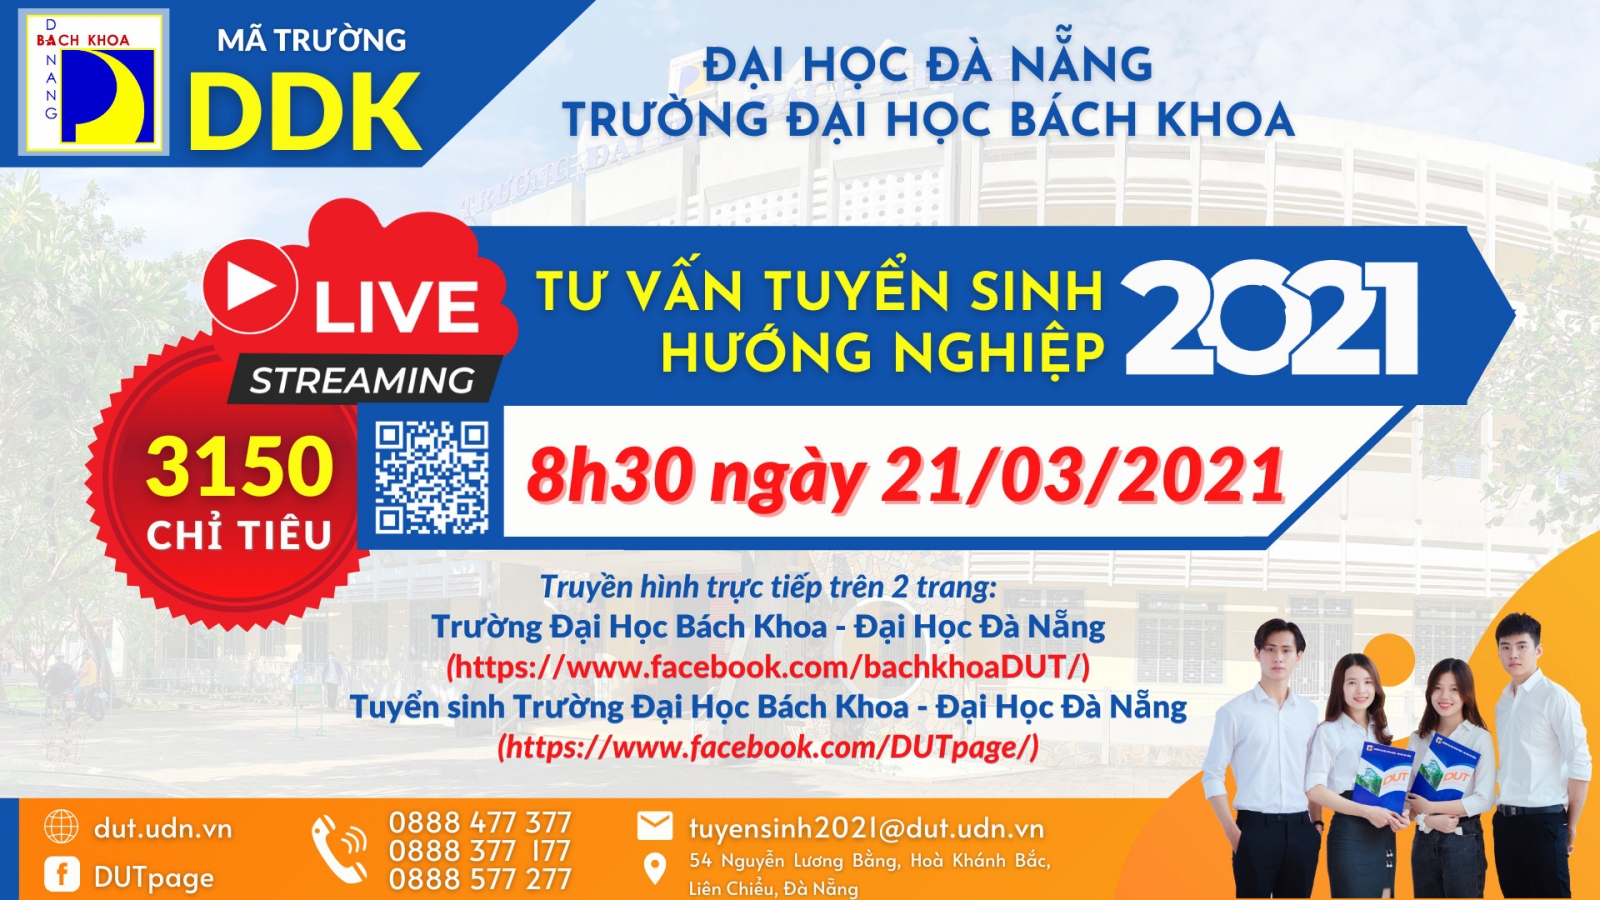 Trường ĐH Bách khoa (ĐH Đà Nẵng): Sẽ livestream tư vấn tuyển sinh 2021